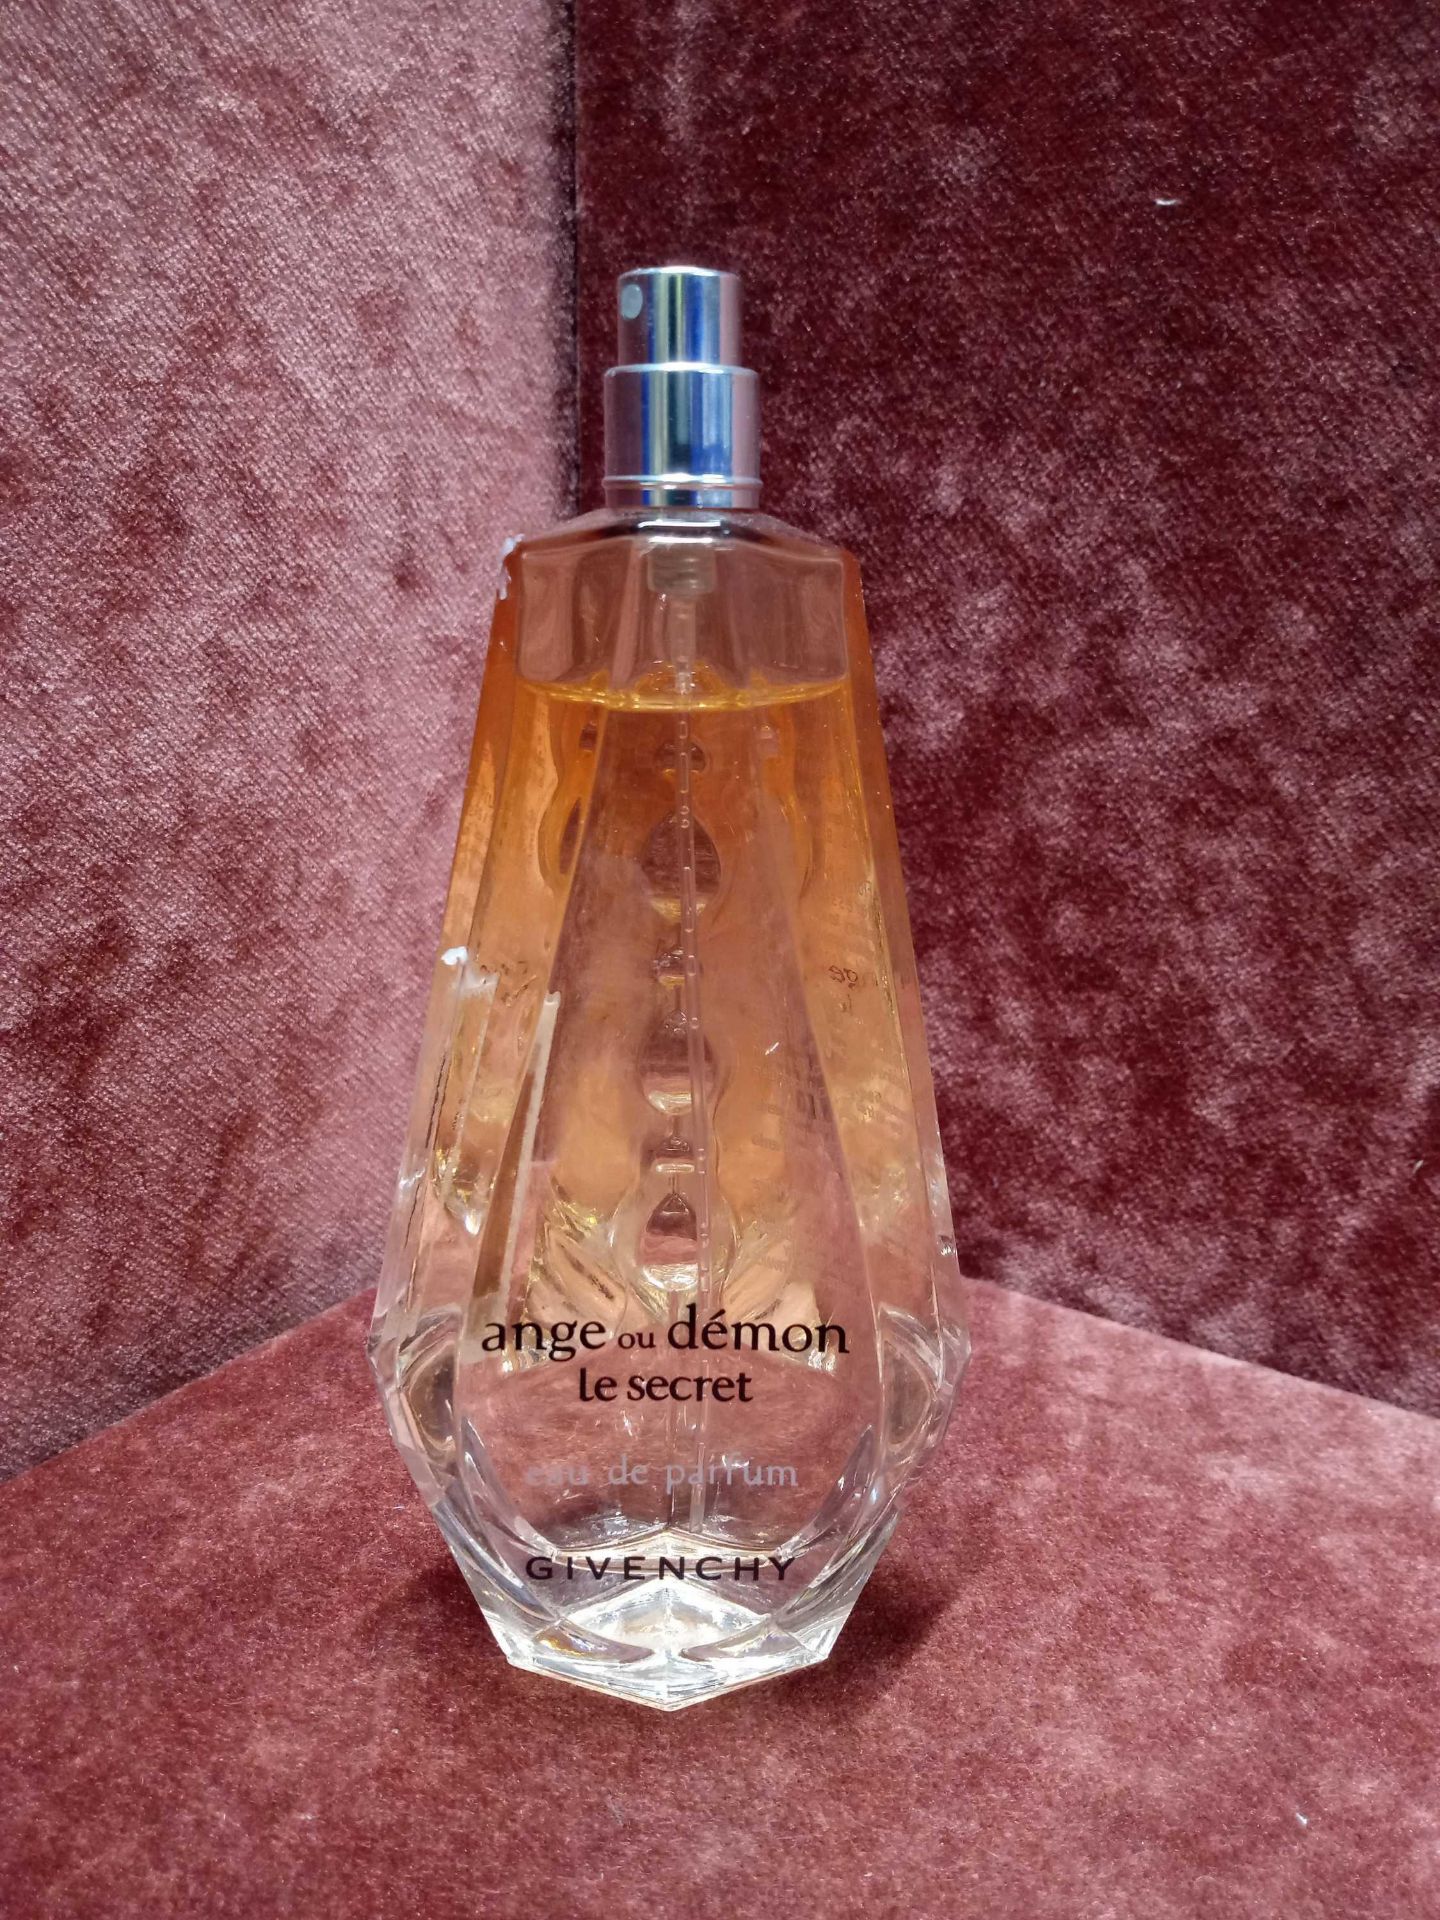 RRP £75 Unboxed 100Ml Tester Bottle Of Givenchy Ange Ou Demon Le Secret Eau De Parfum Ex-Display